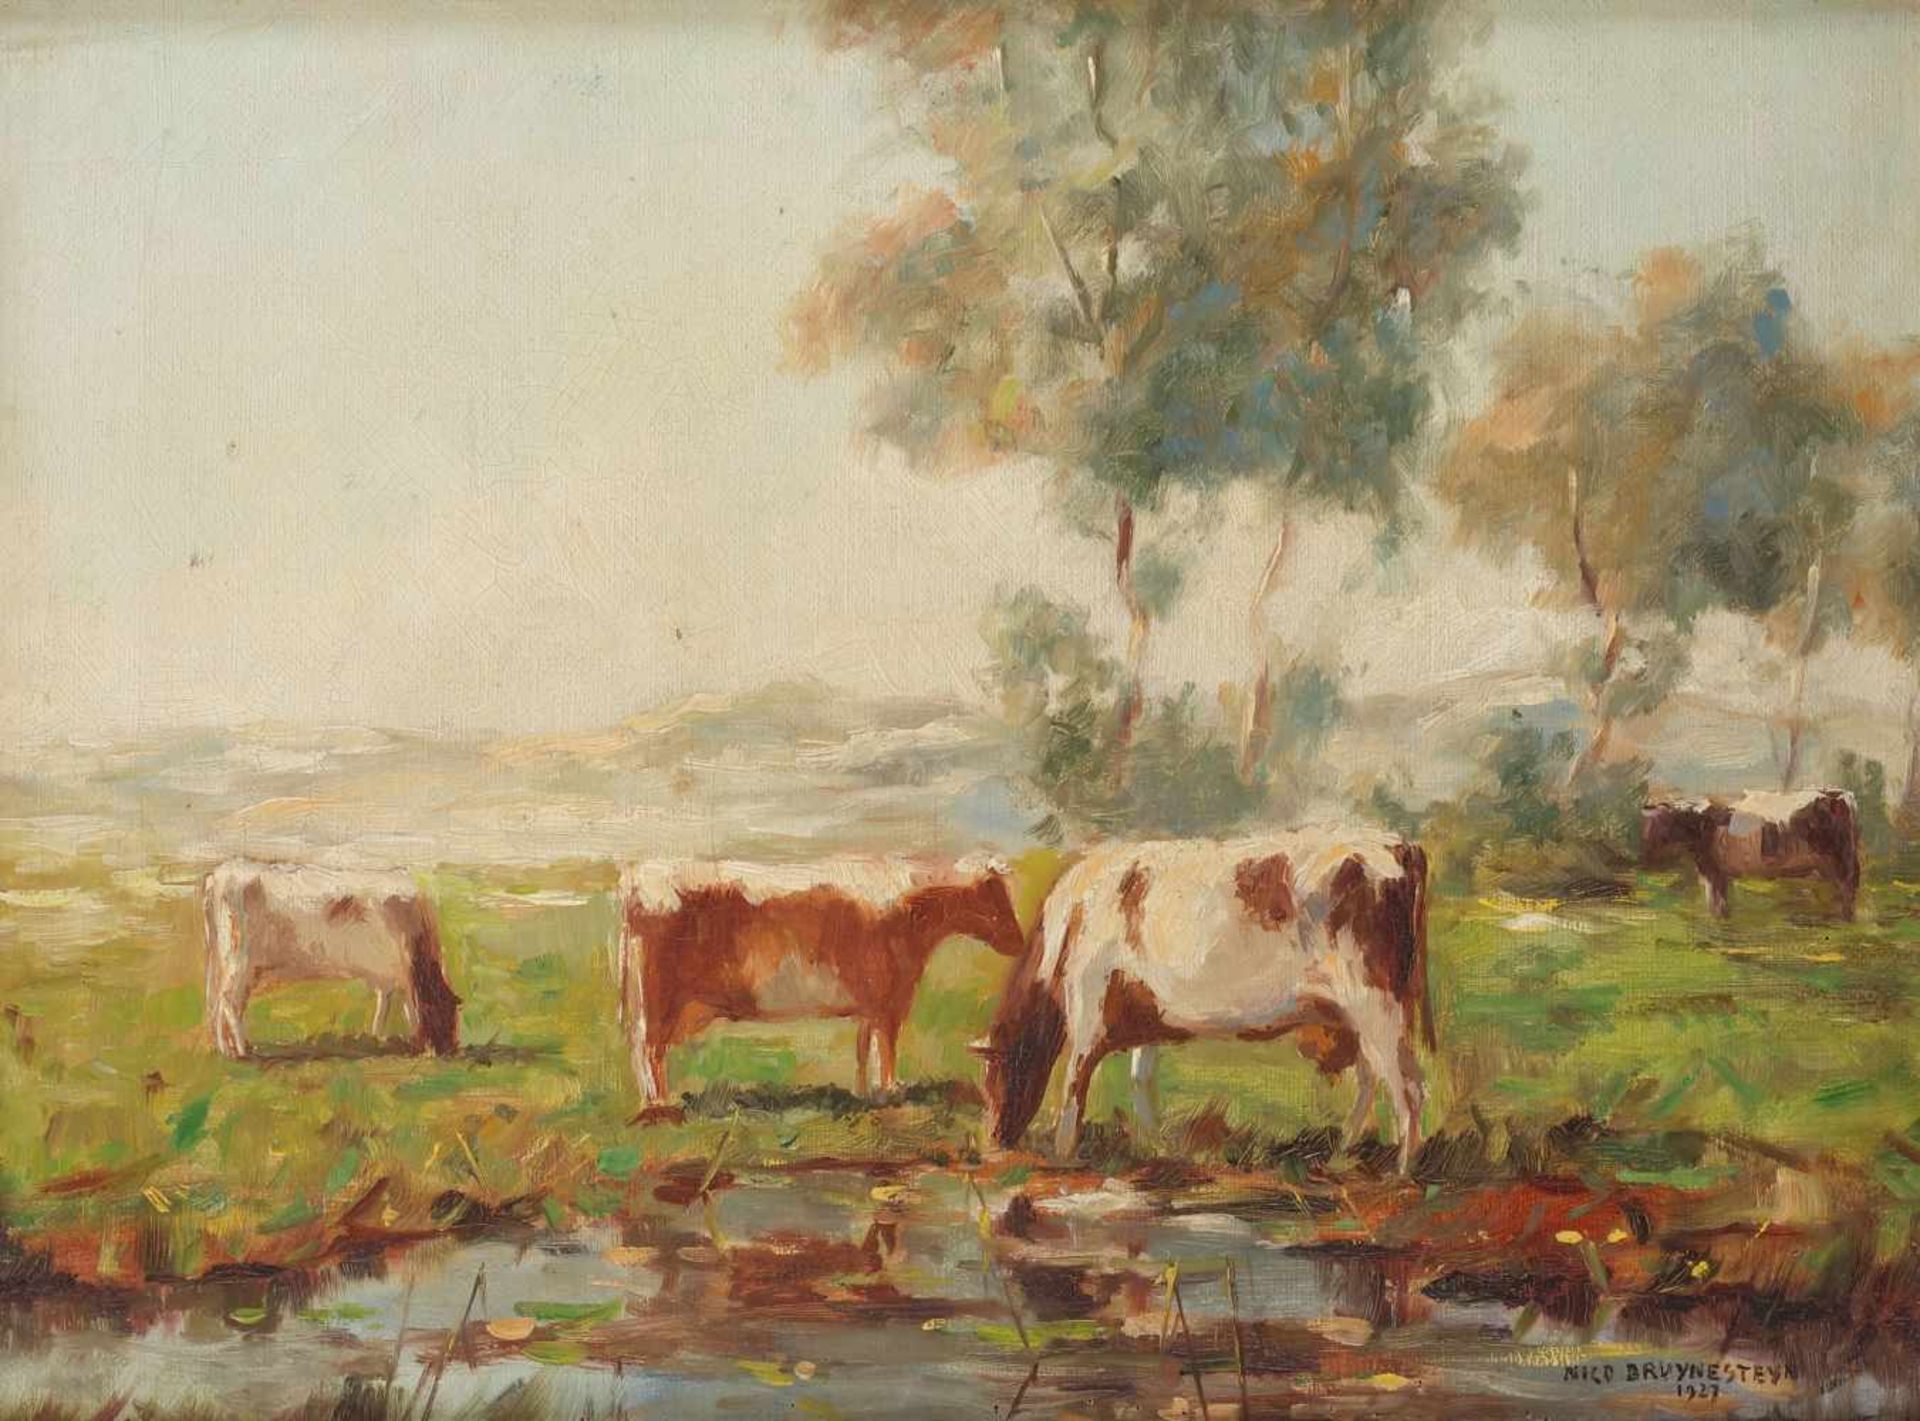 Nico Bruynesteyn (Nieuwer-Amstel, Amstelveen 1893 - 1950 Utrecht), Koeien bij de waterkant in een